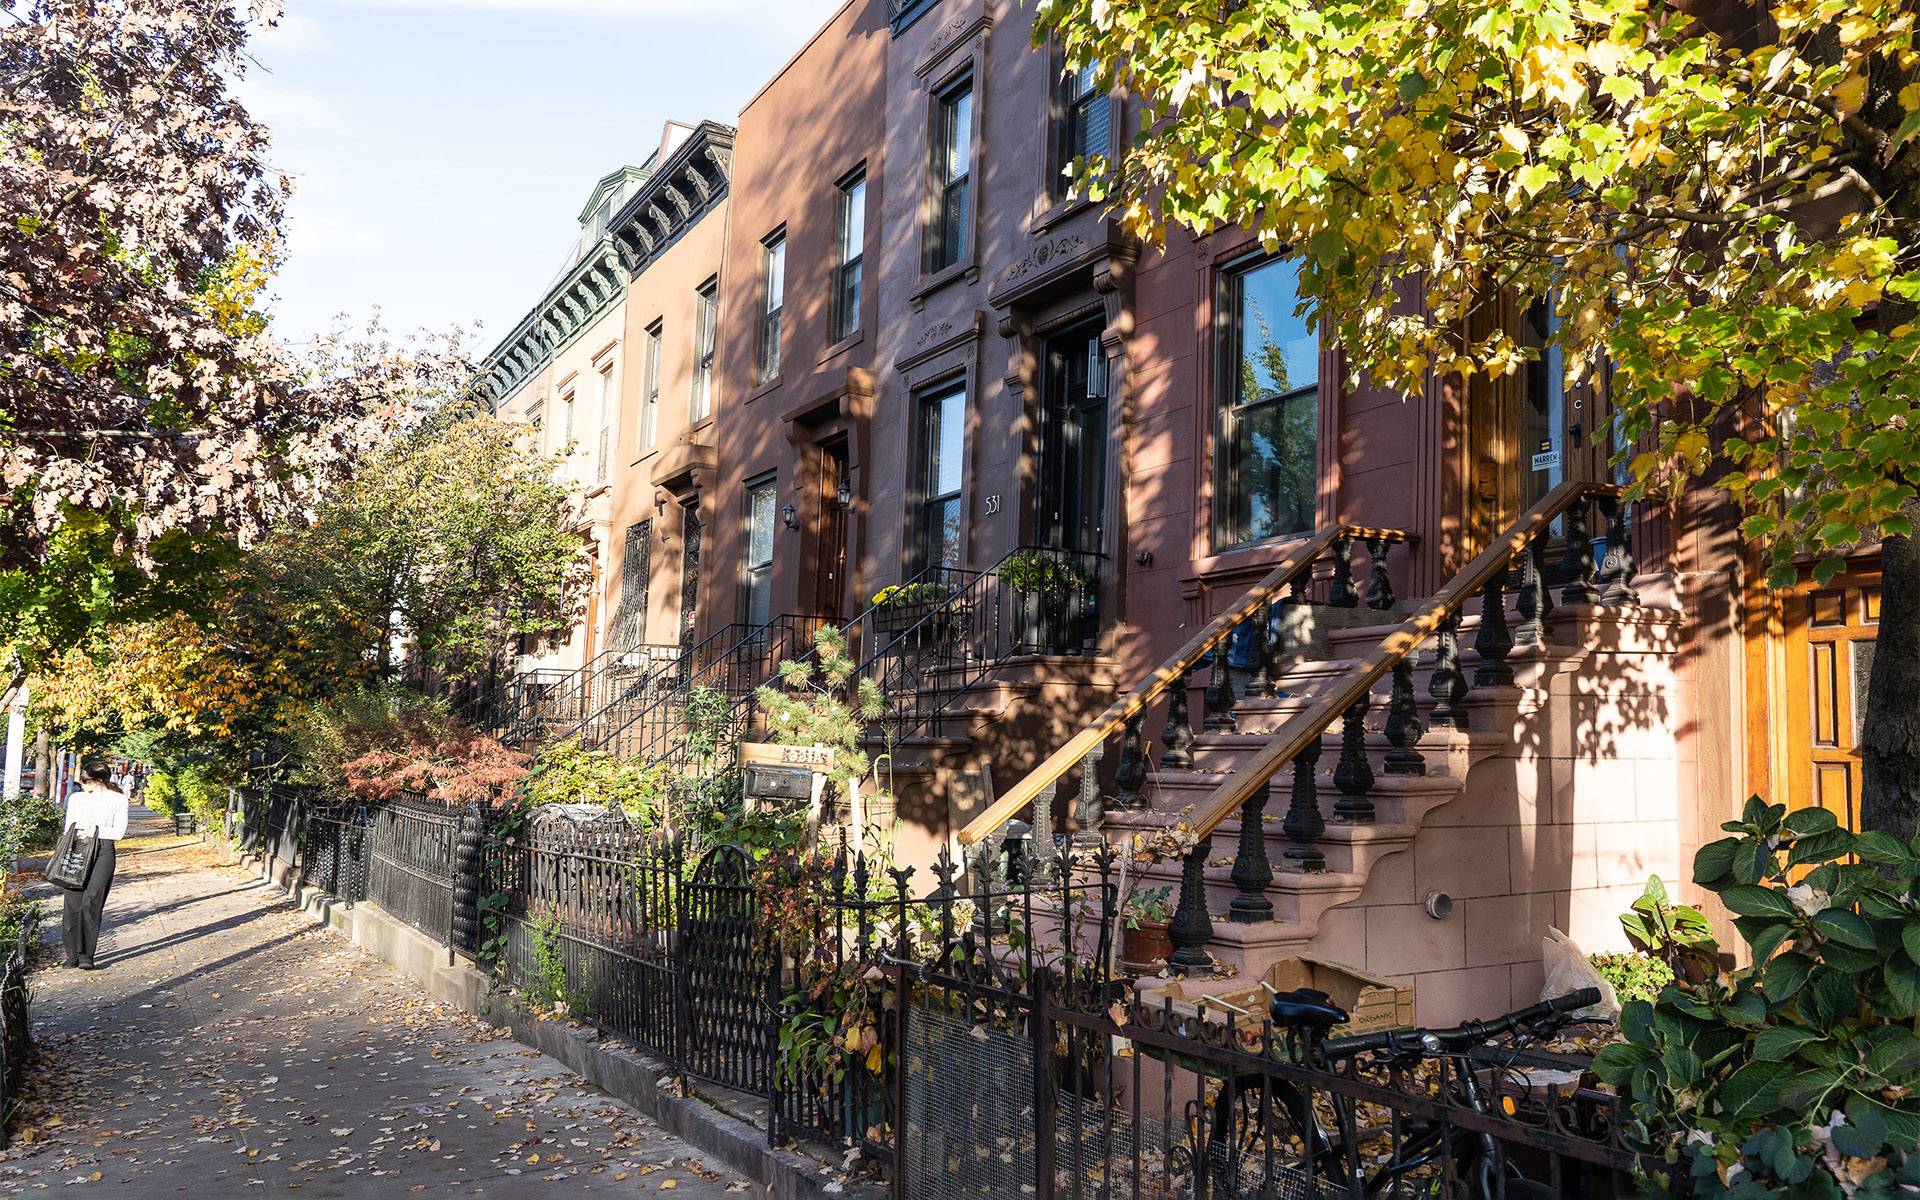 Die Brownstone Houses, ein Wahrzeichen von Brooklyn, sind Reihenhäuser in verschiedenen Brauntönen mit kleine Gärten und Treppen die zu den Häusertüren führen.